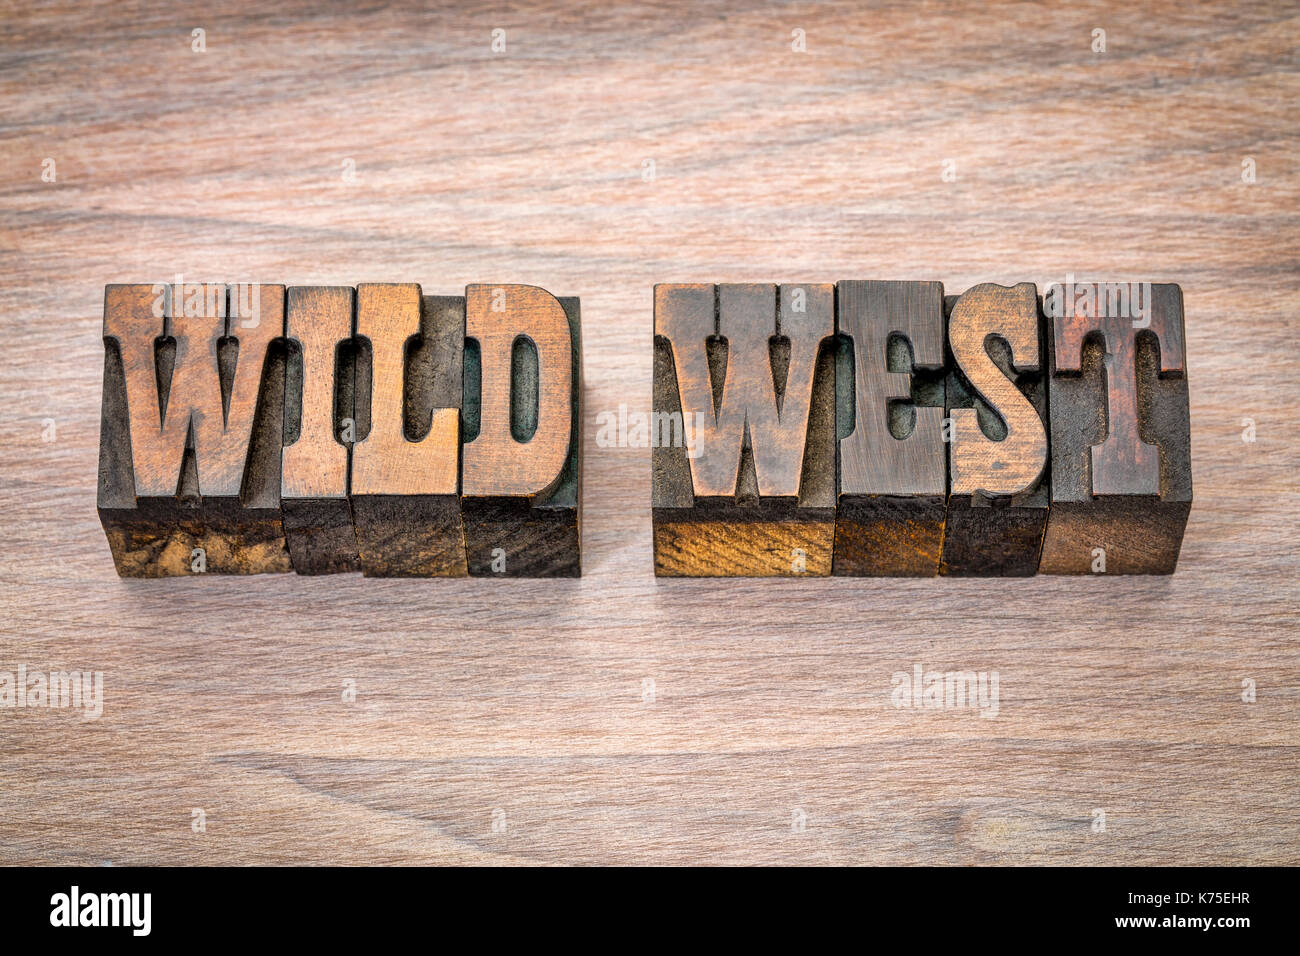 Wild West Banner - Text in Vintage buchdruck Holzart - Französisch Clarendon font populär in westlichen Filmen und Erinnerungsstücke Stockfoto